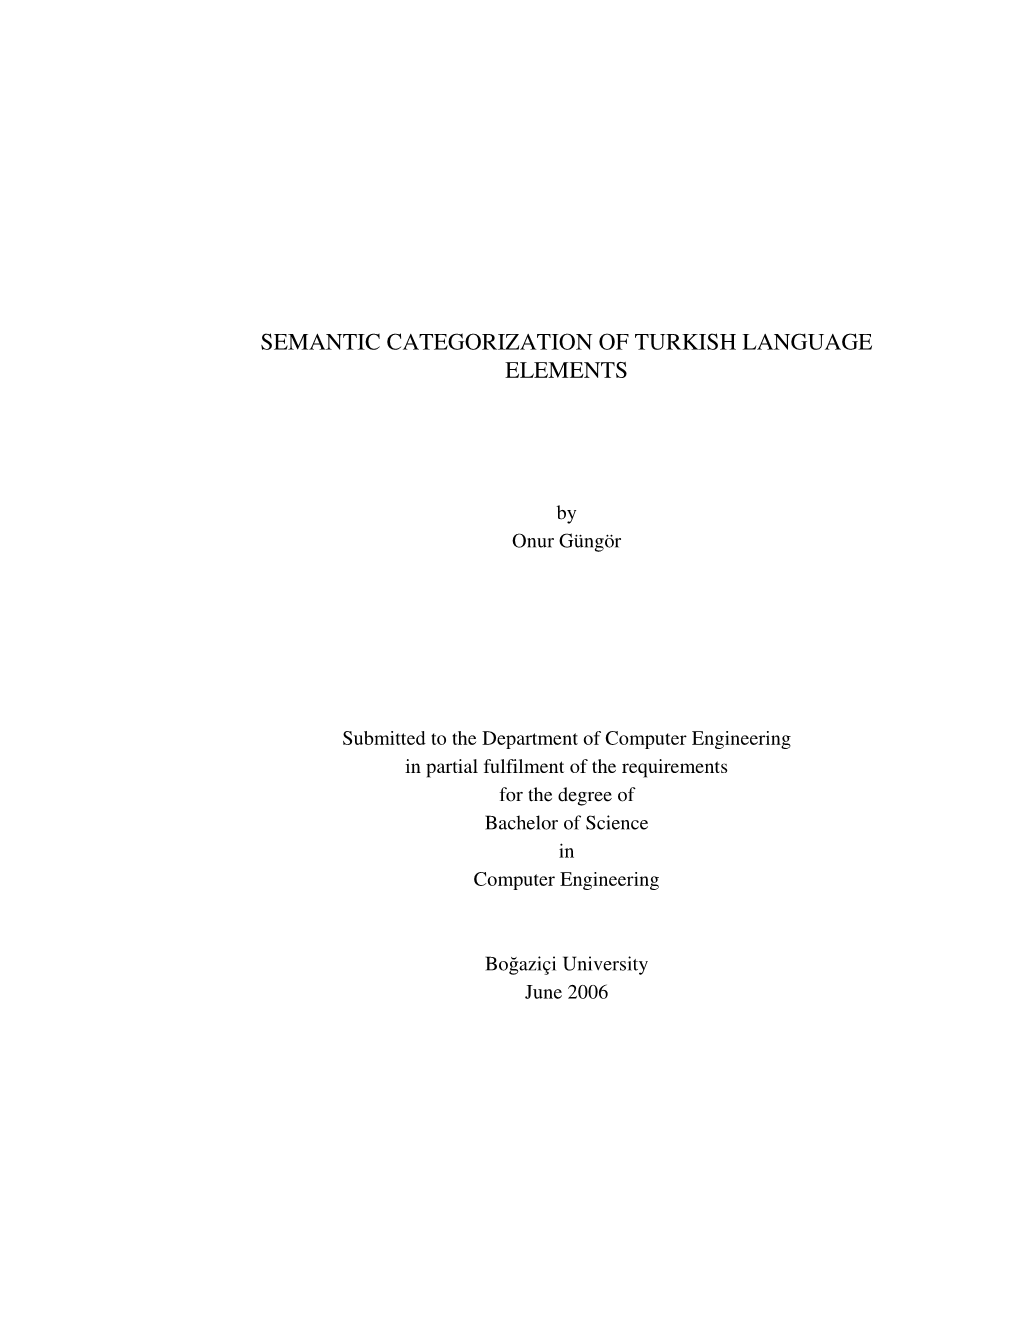 Semantic Categorization of Turkish Language Elements